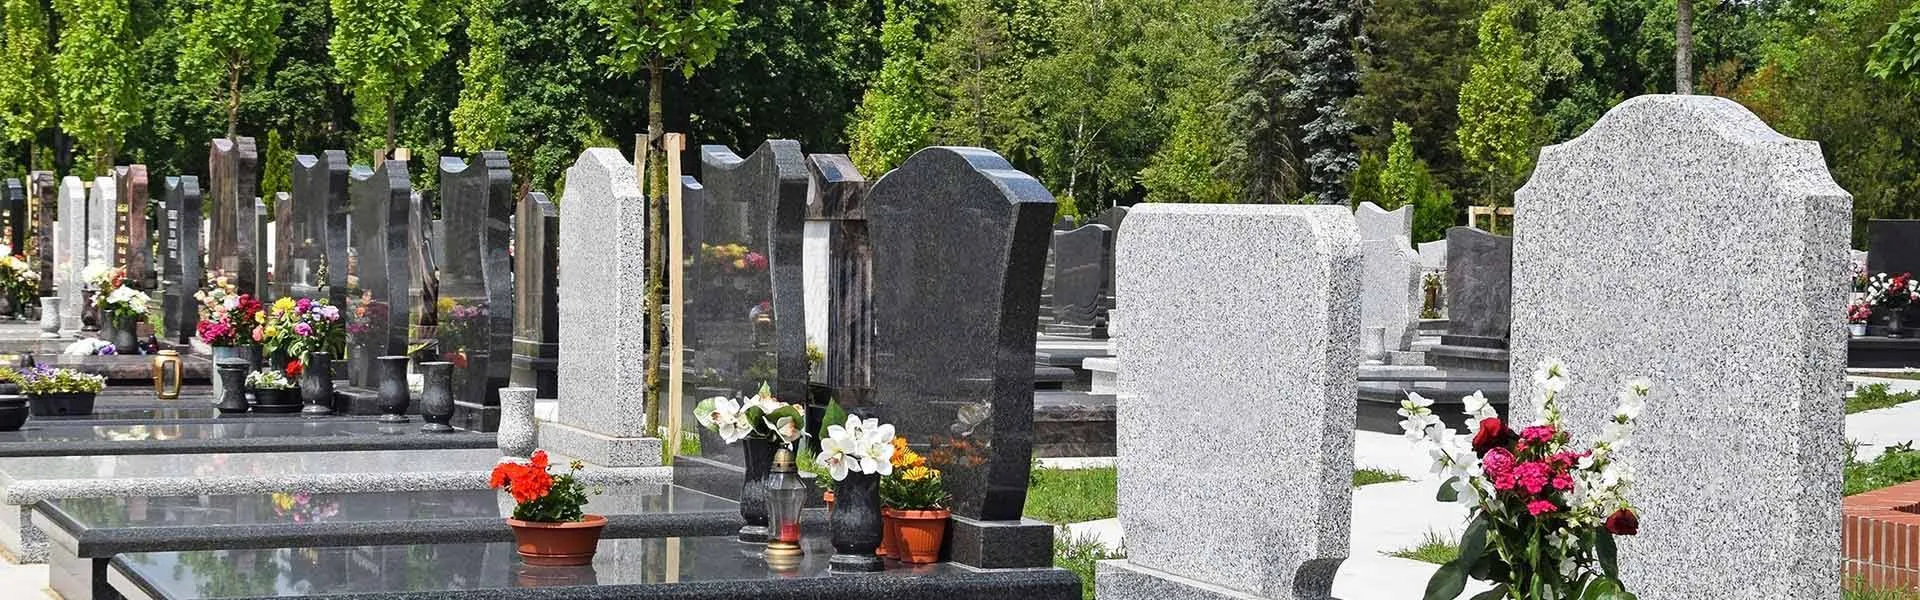 Nagrobki na cmentarzu